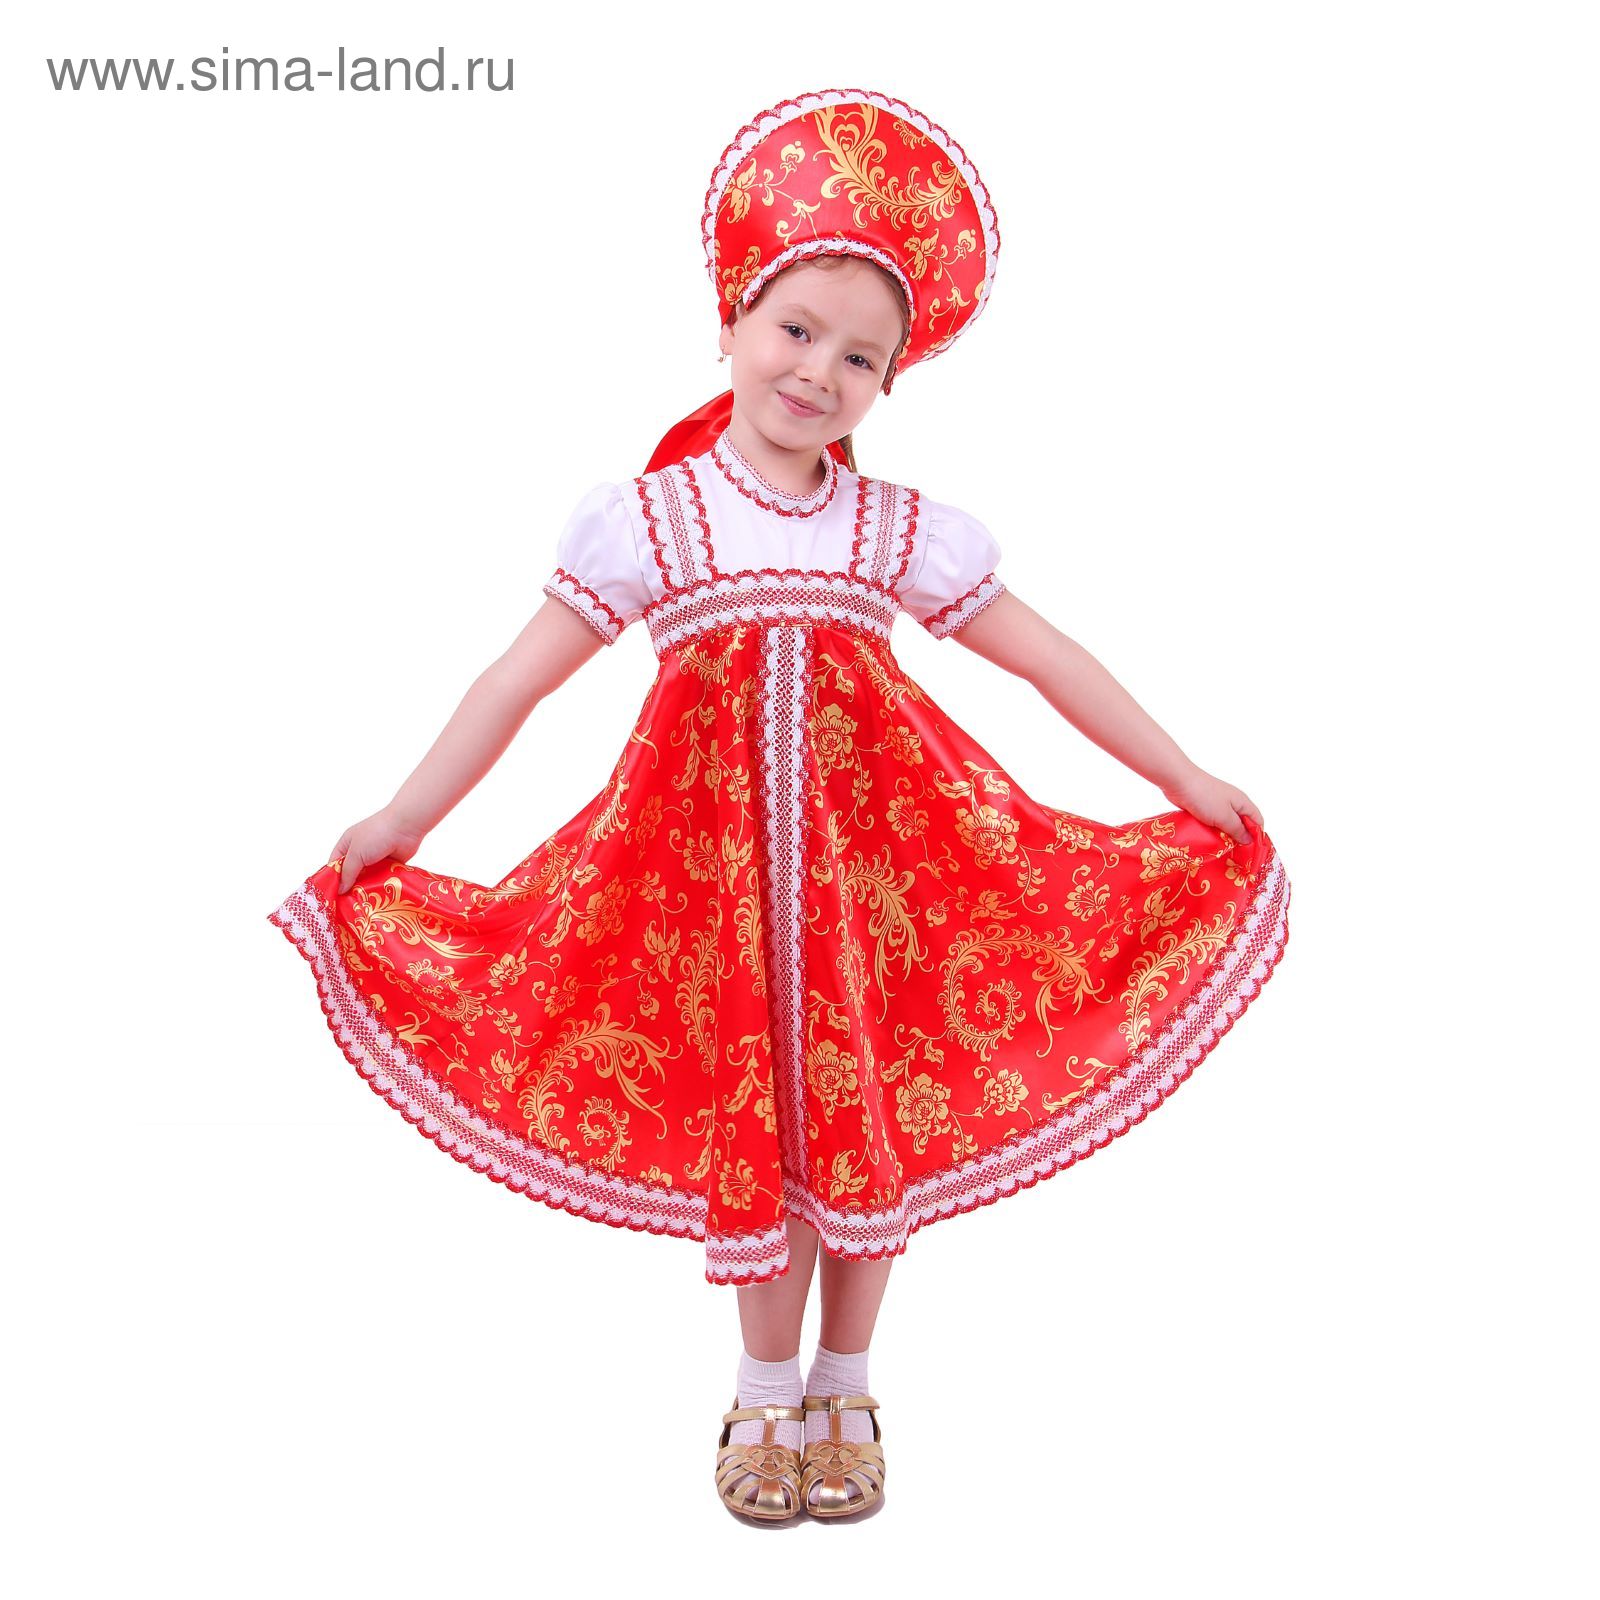 Детское платье в русском стиле| Славянка